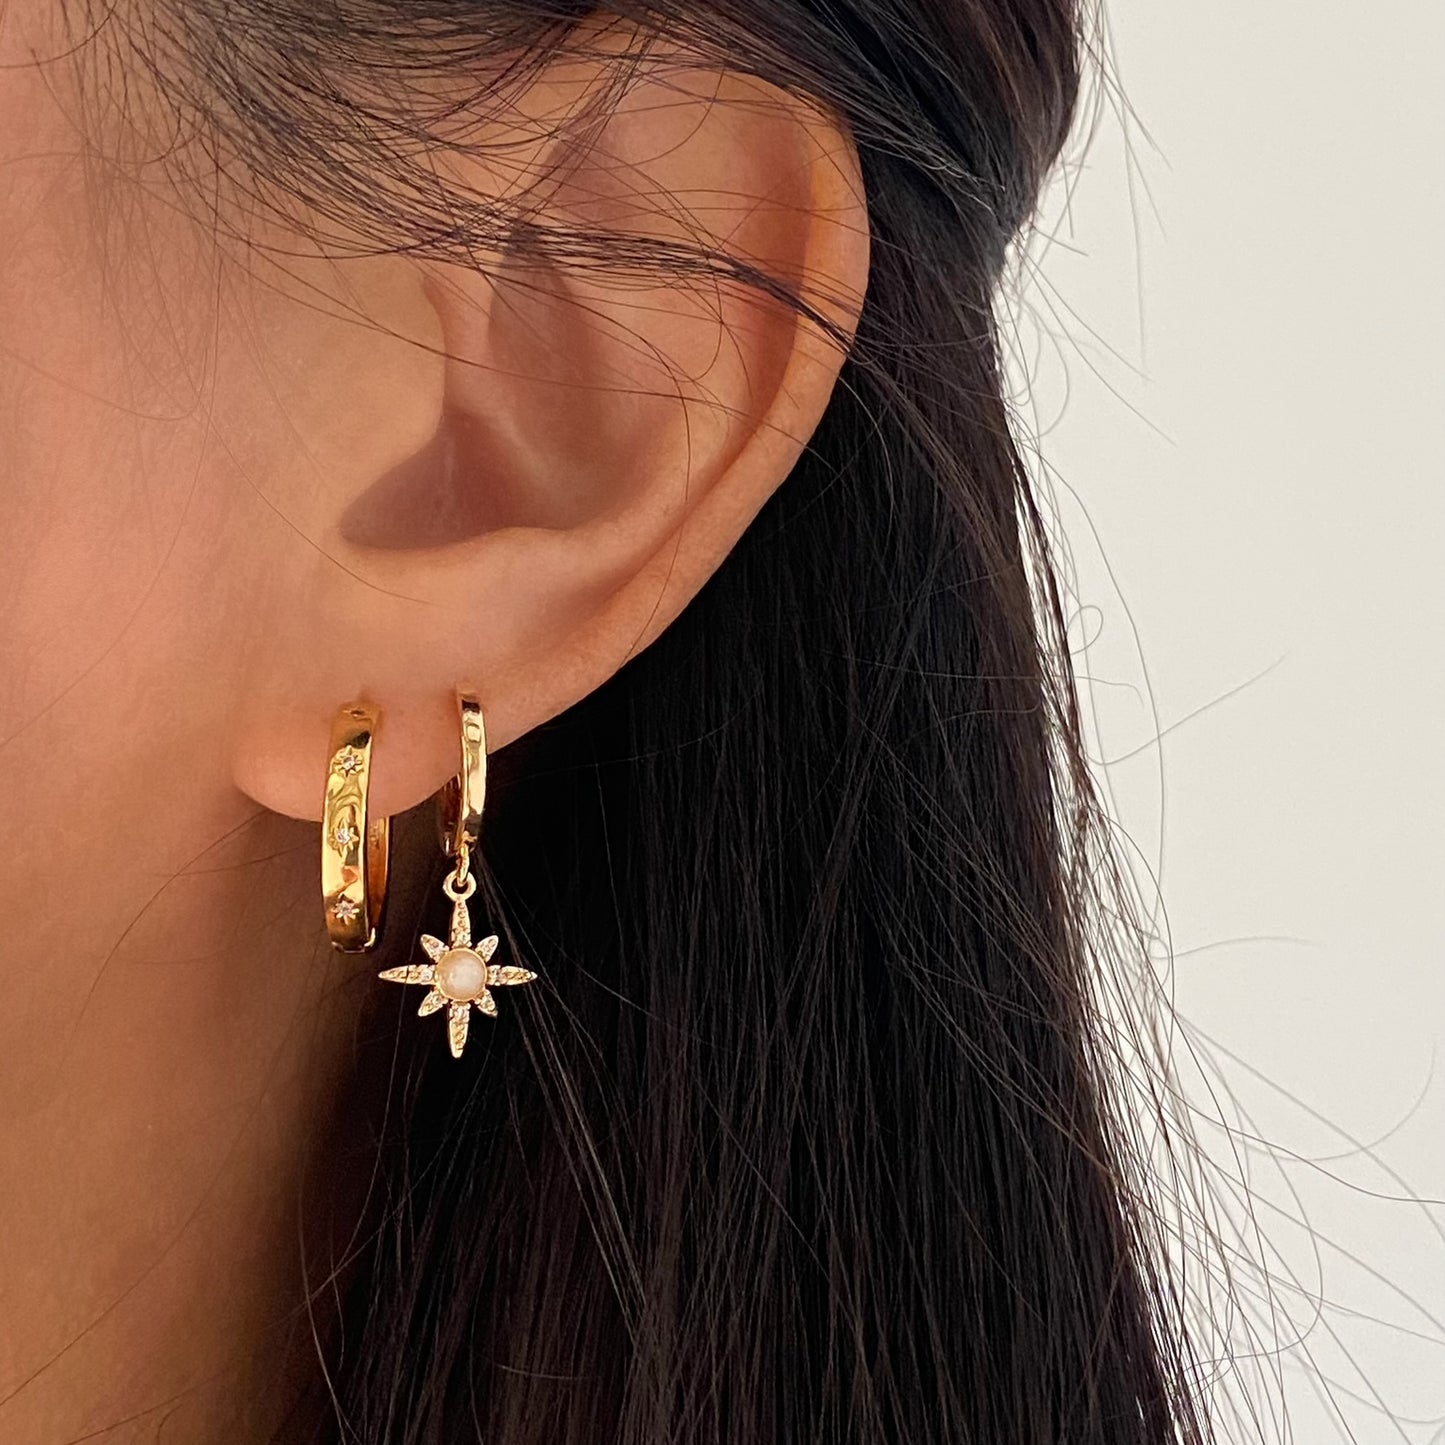 Starburst Celestial Gold Hoop Earrings 3mm thick